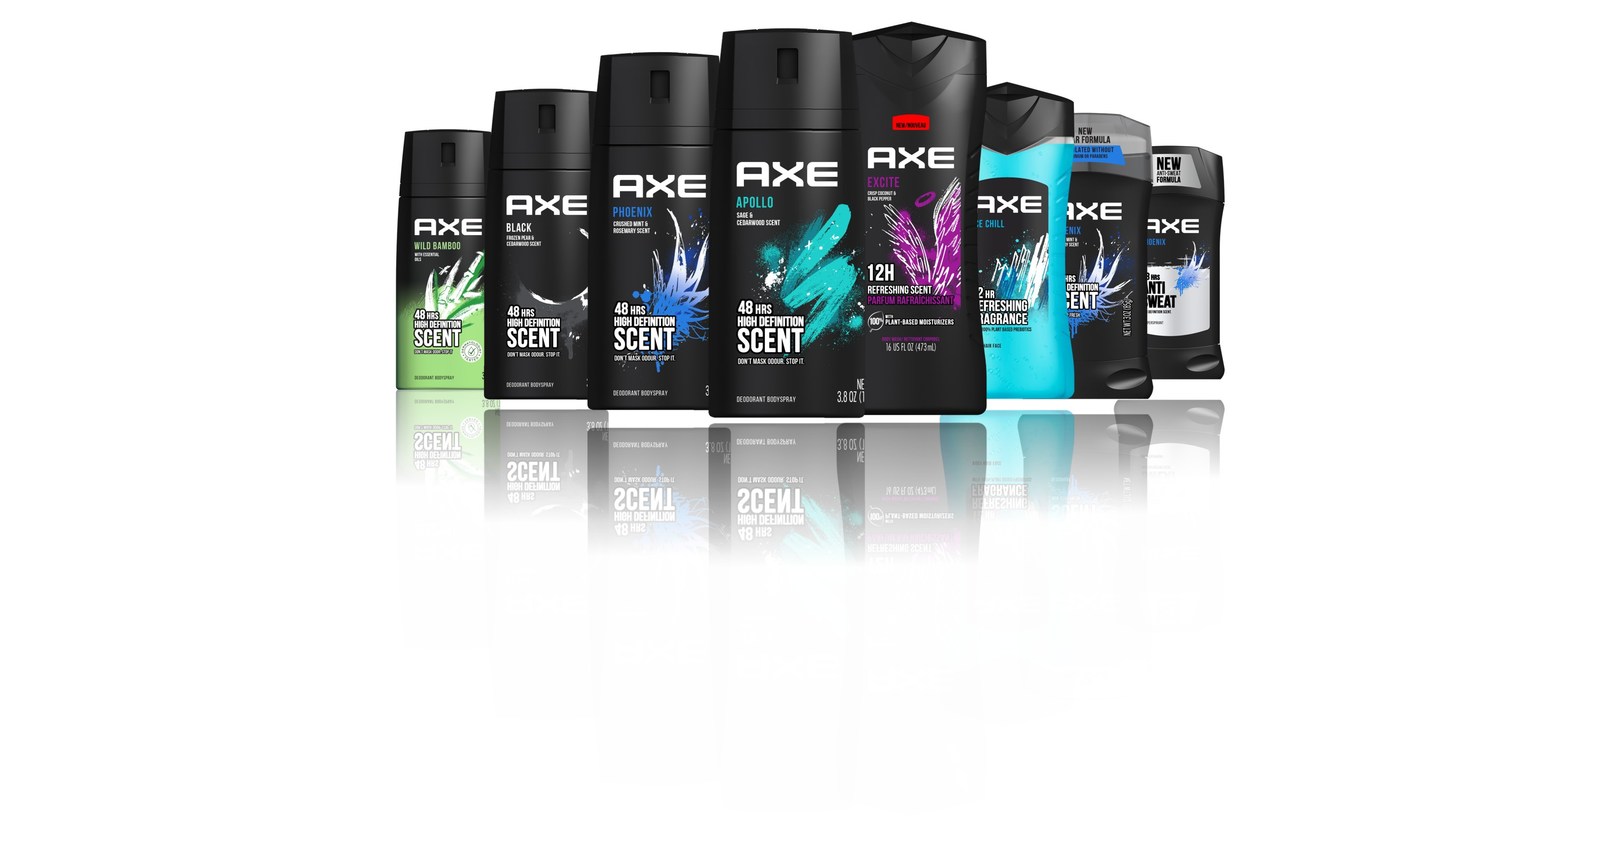 axe body spray ads